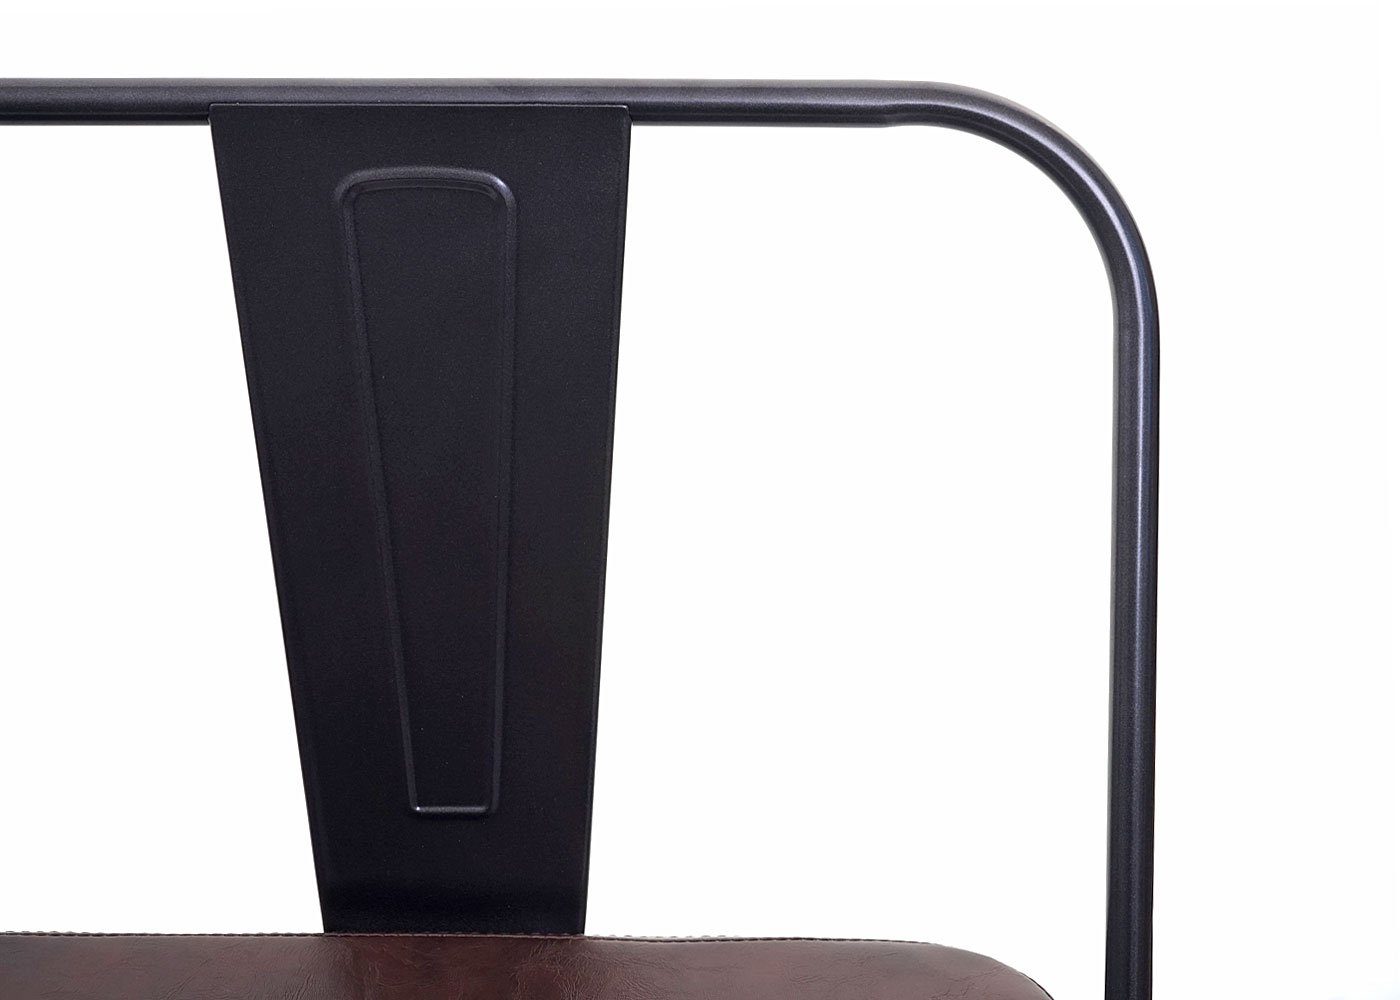 Sitzbank Gepolsterte schwarz Kanten braun, | Abgerundete und MCW-H10-SB, Ecken MCW braun Kunstleder, aus Sitzfläche